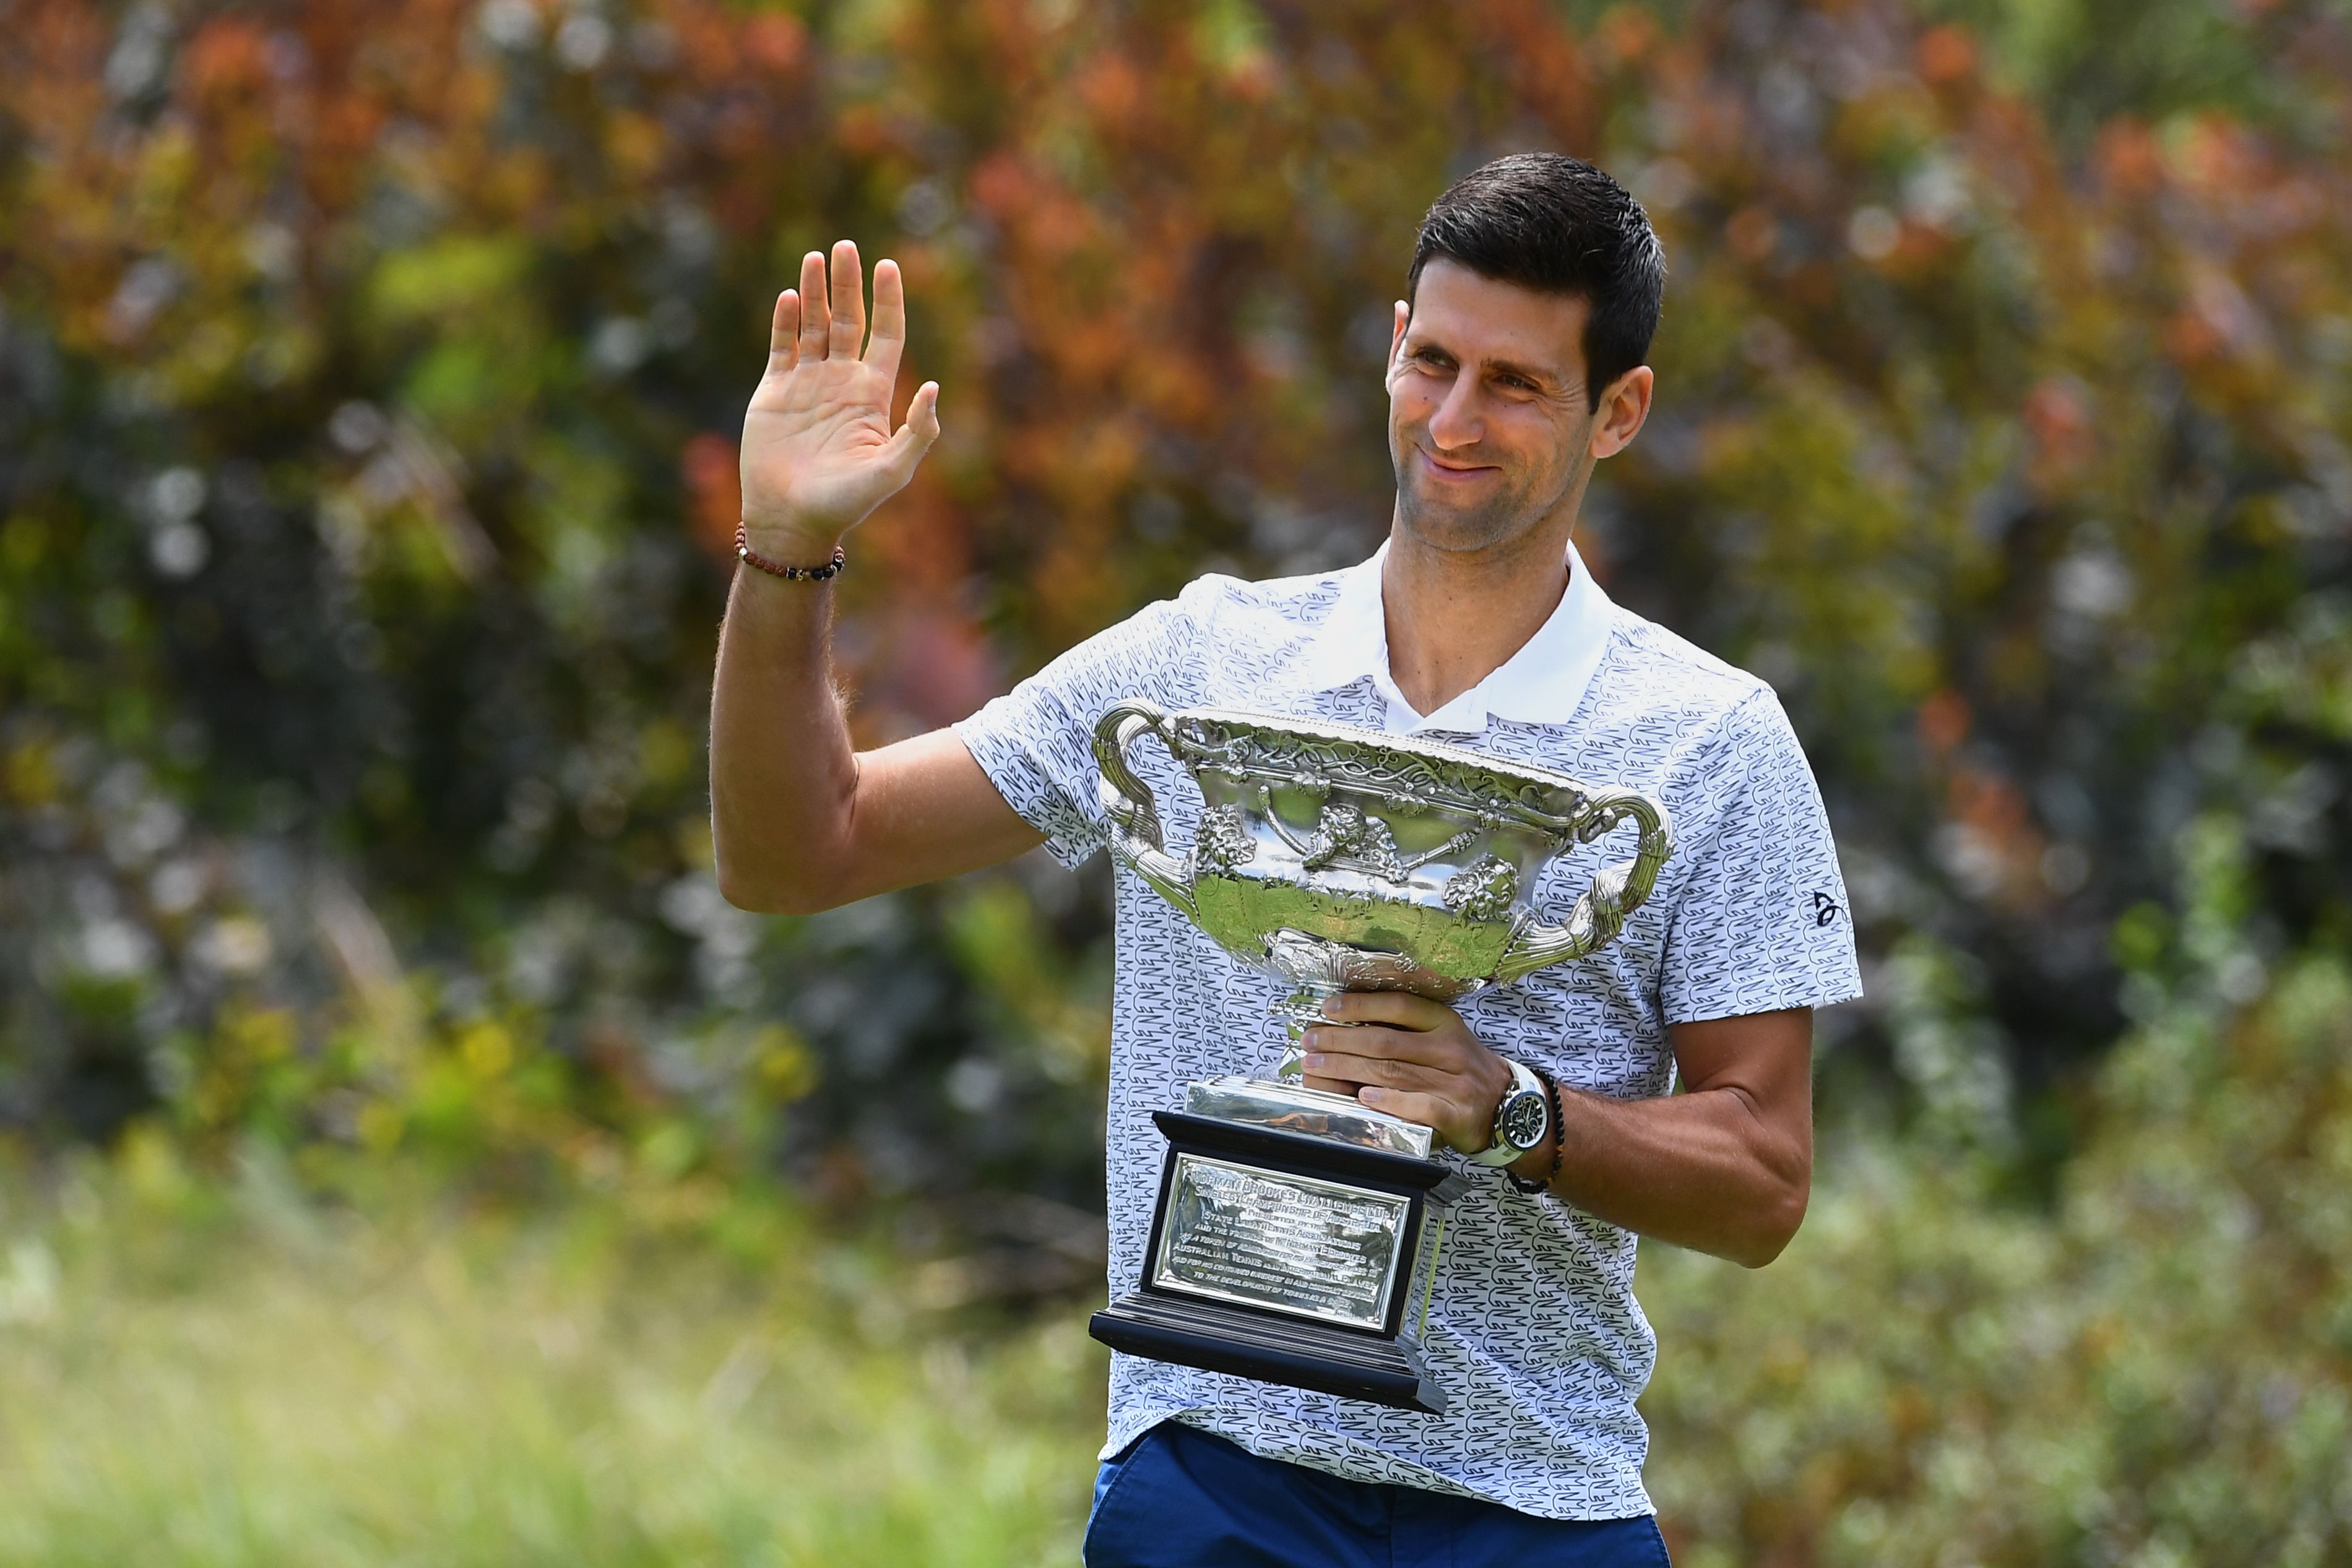 Djokovic's Tiebreak 'Lockdown Mode' - By the Numbers